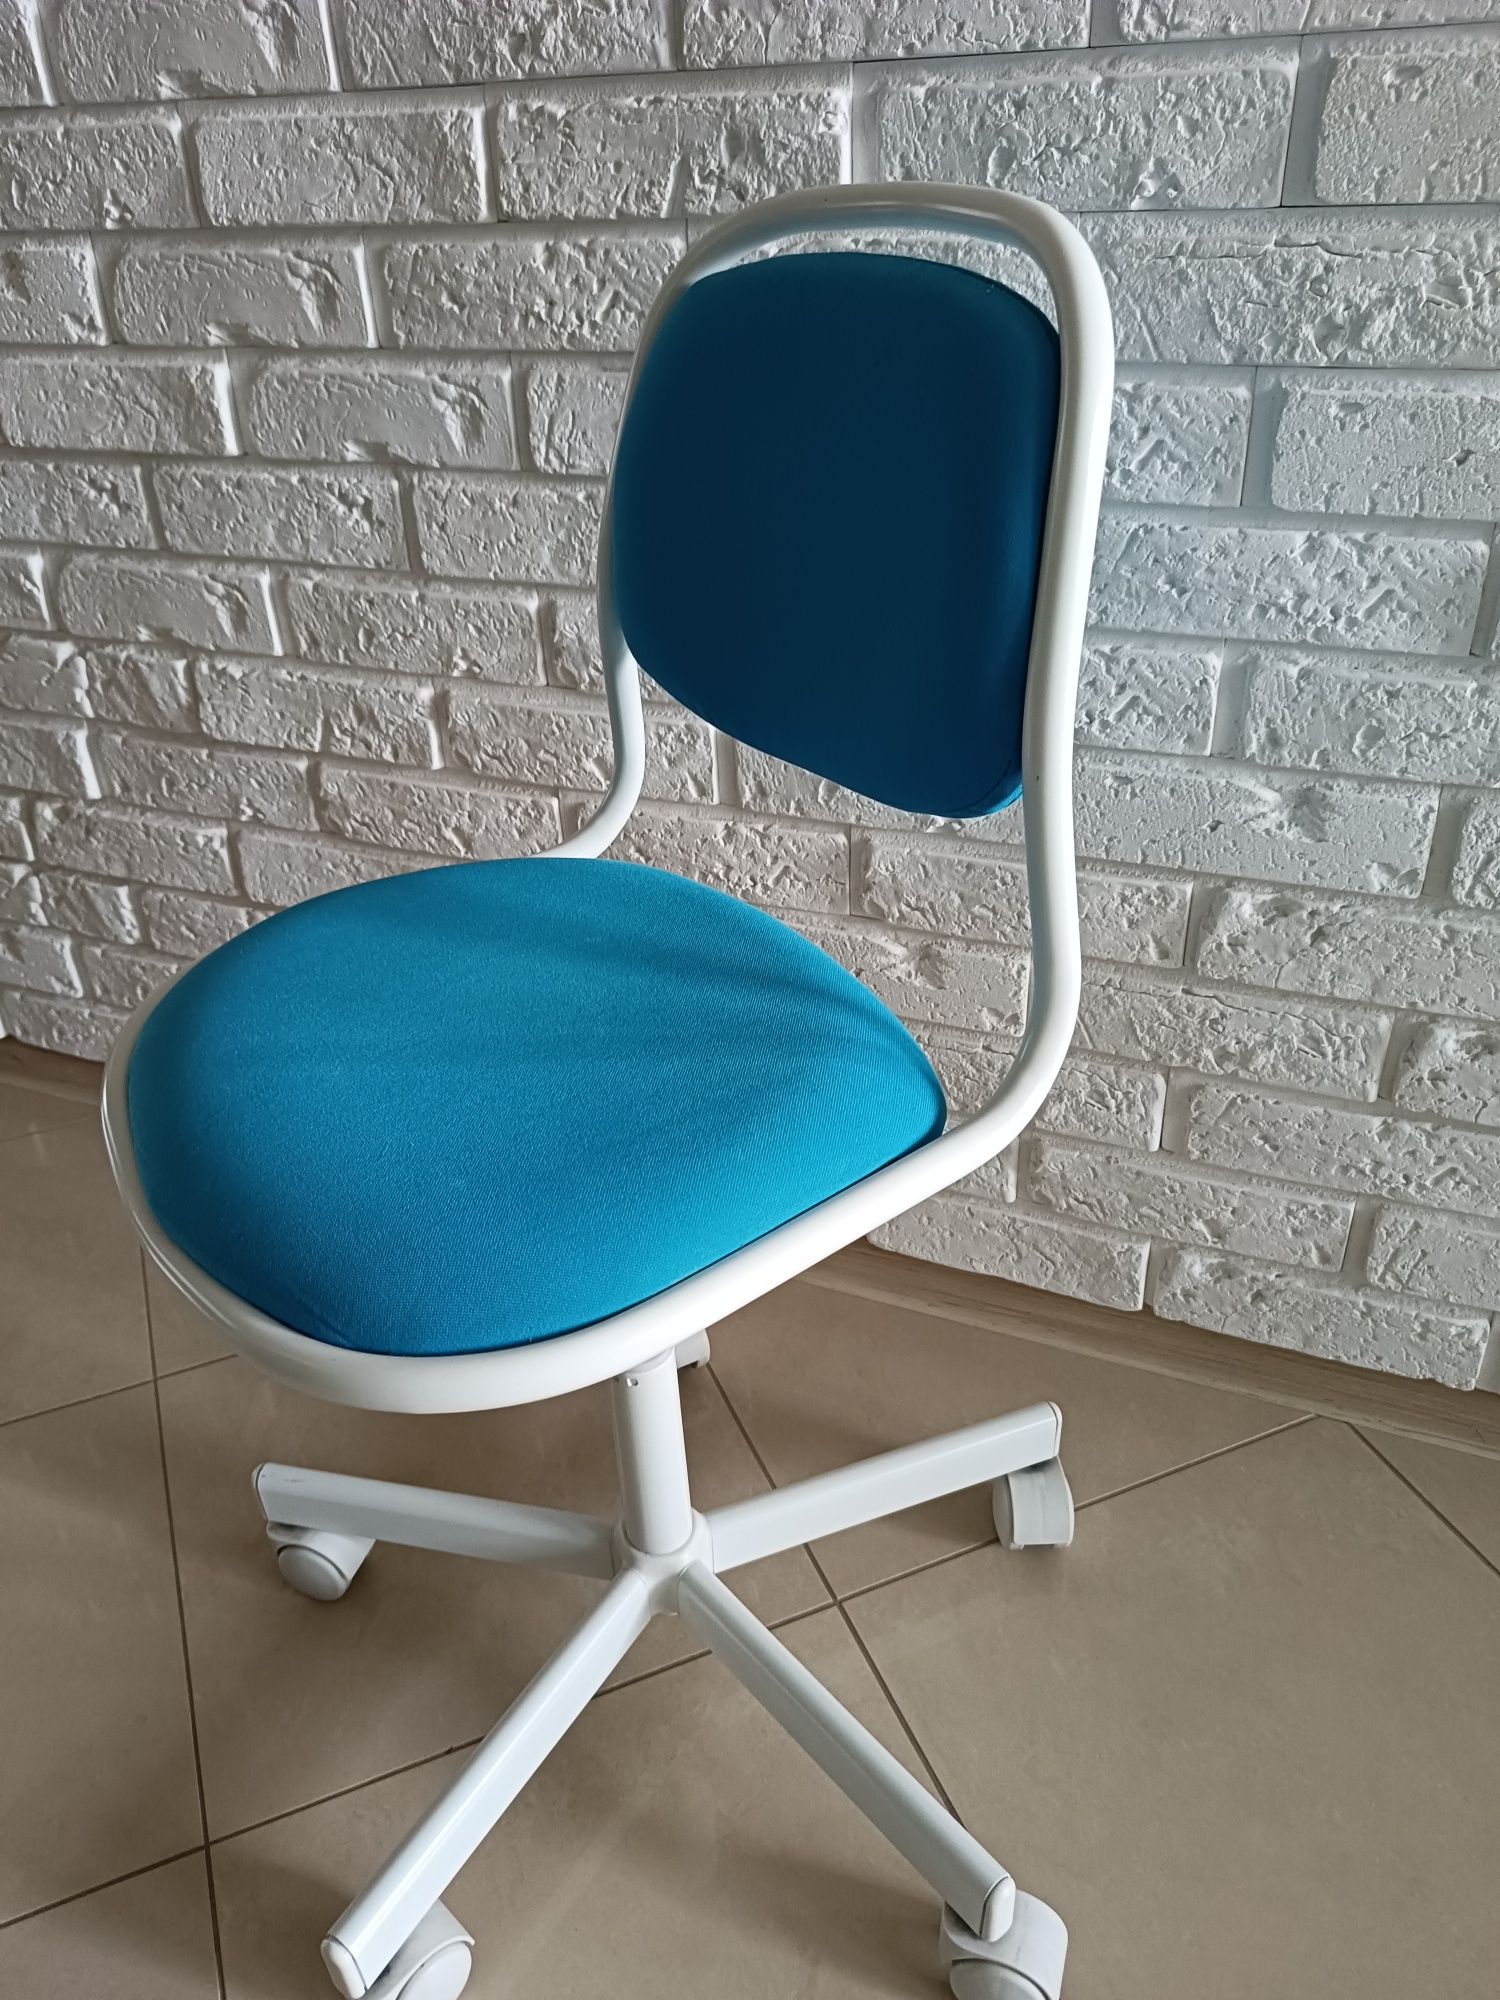 Krzesło obrotowe z IKEA_dziecięce ÖRFJÄLL_białe/niebieski/